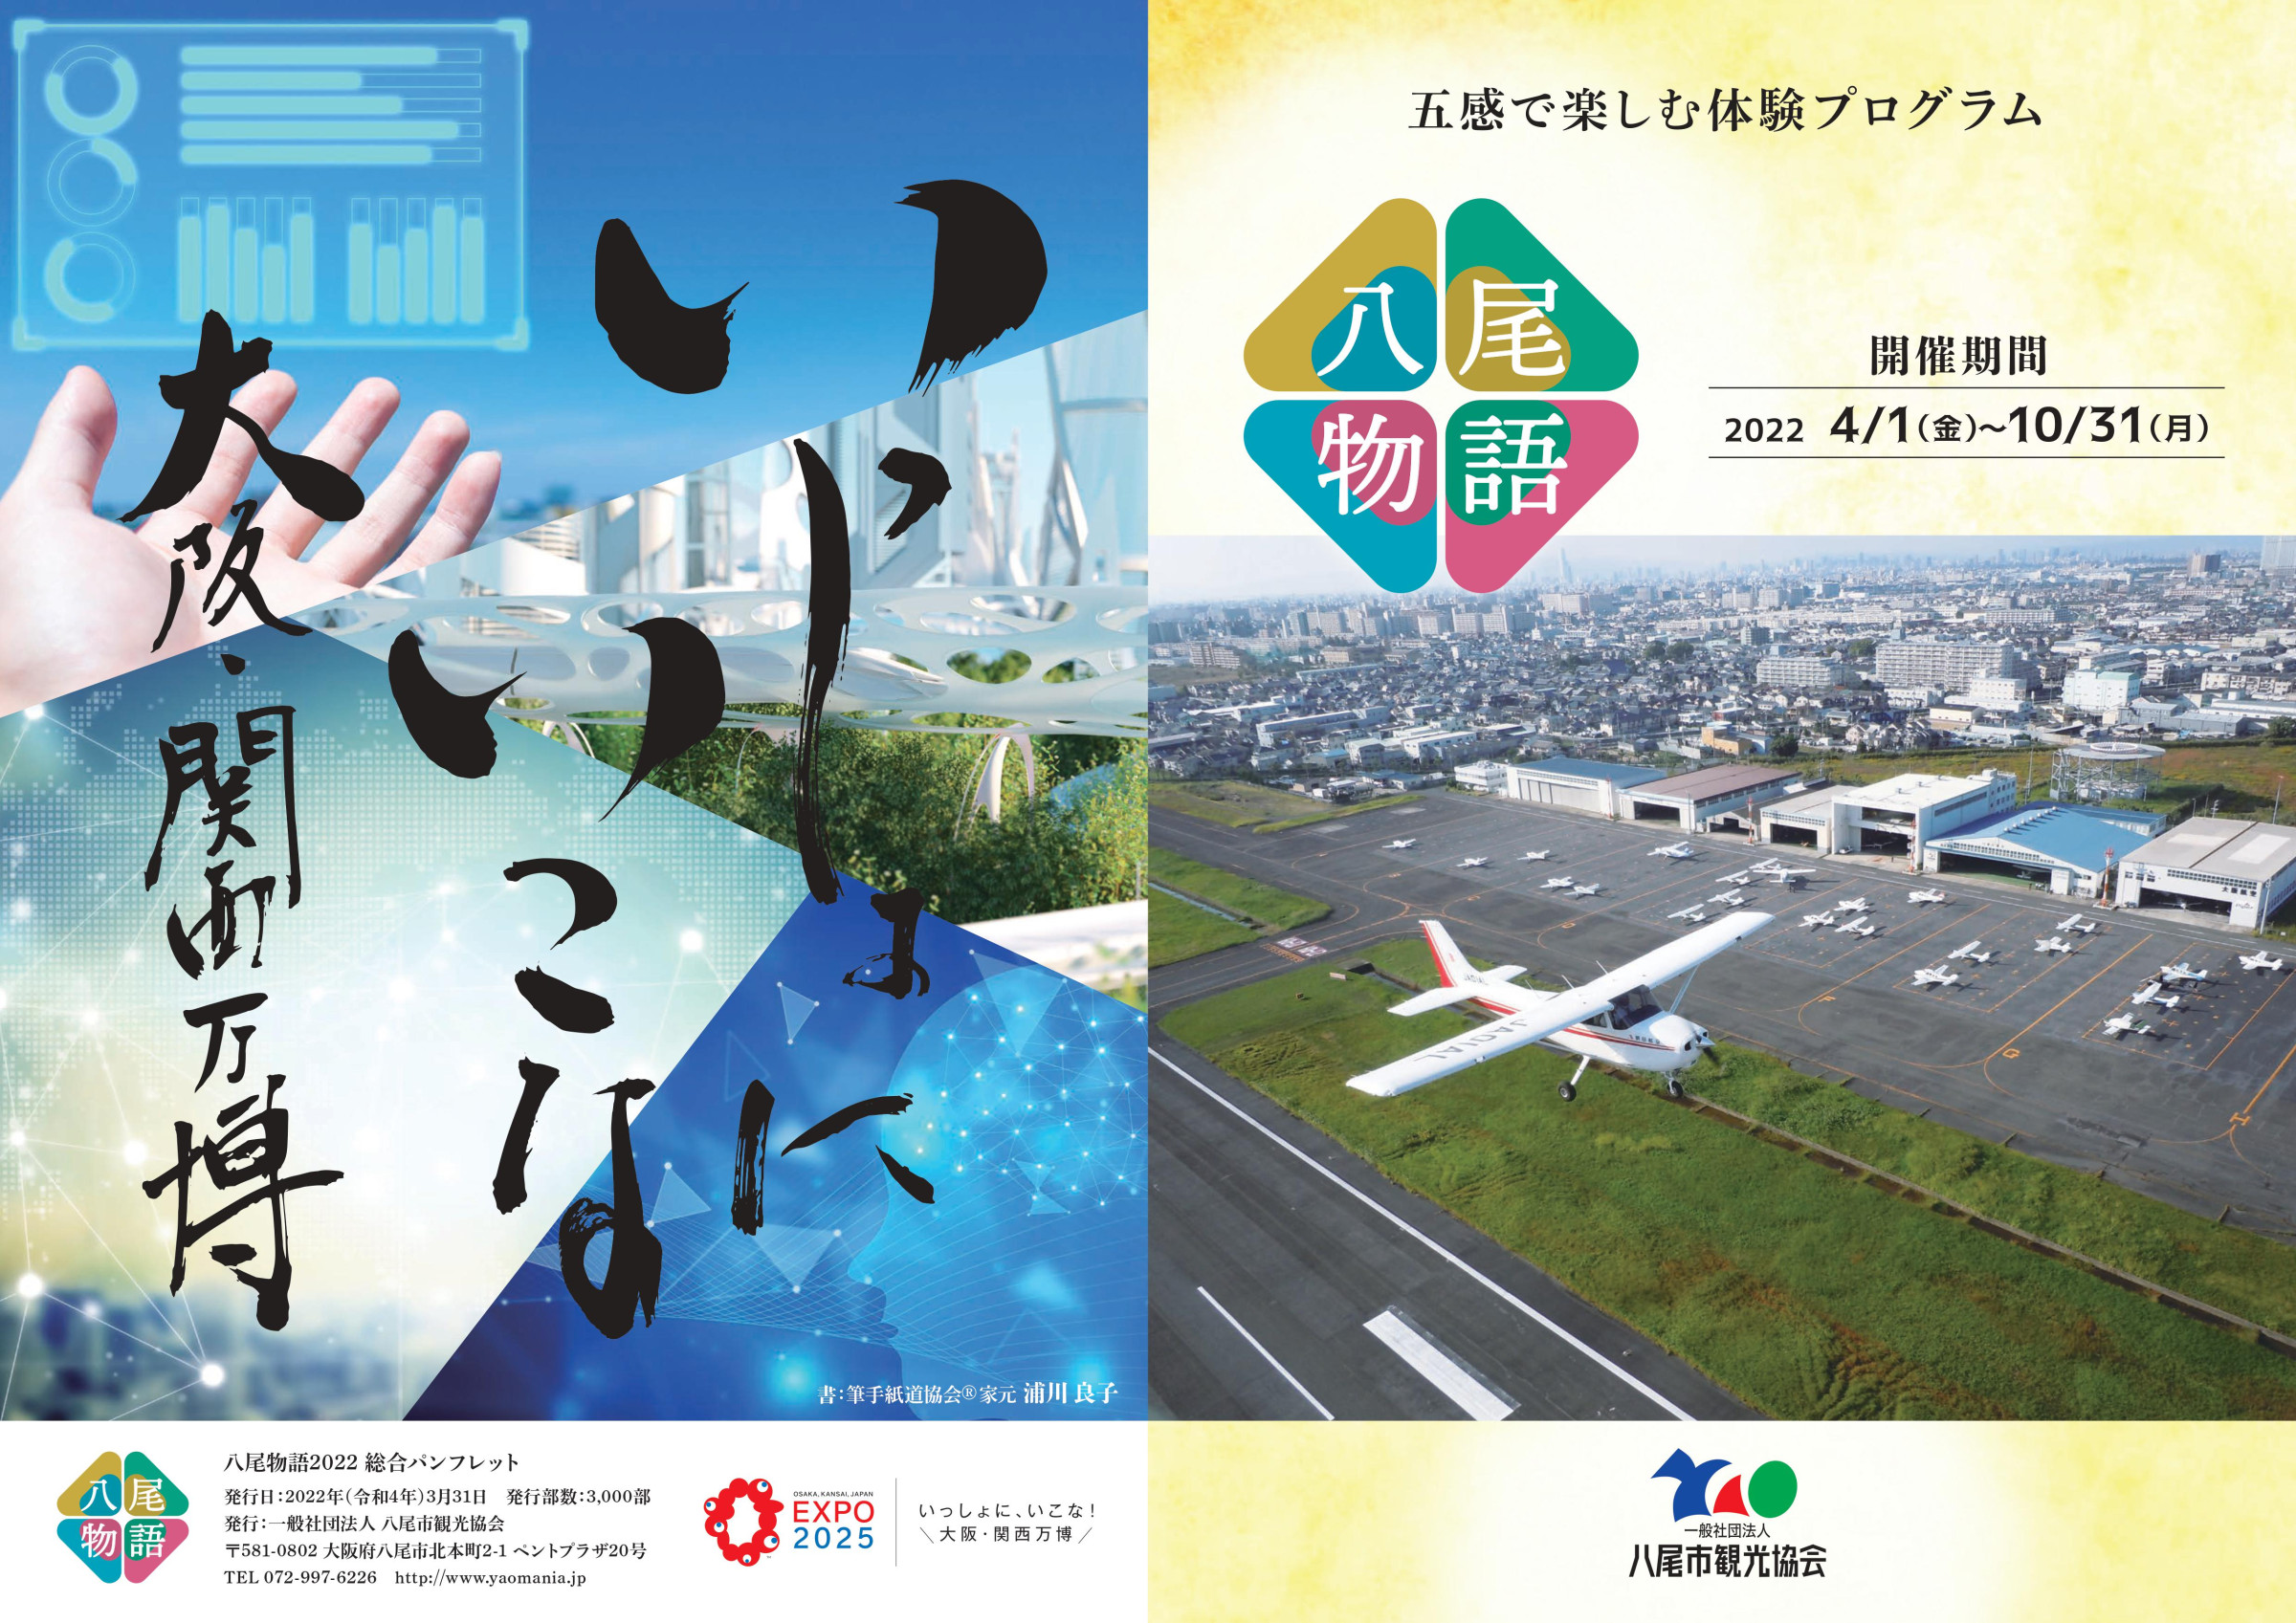 八尾市観光協会　八尾物語2022総合パンフレット掲載のEXPO2025　いっしょに、いこな！大阪・関西万博を揮毫